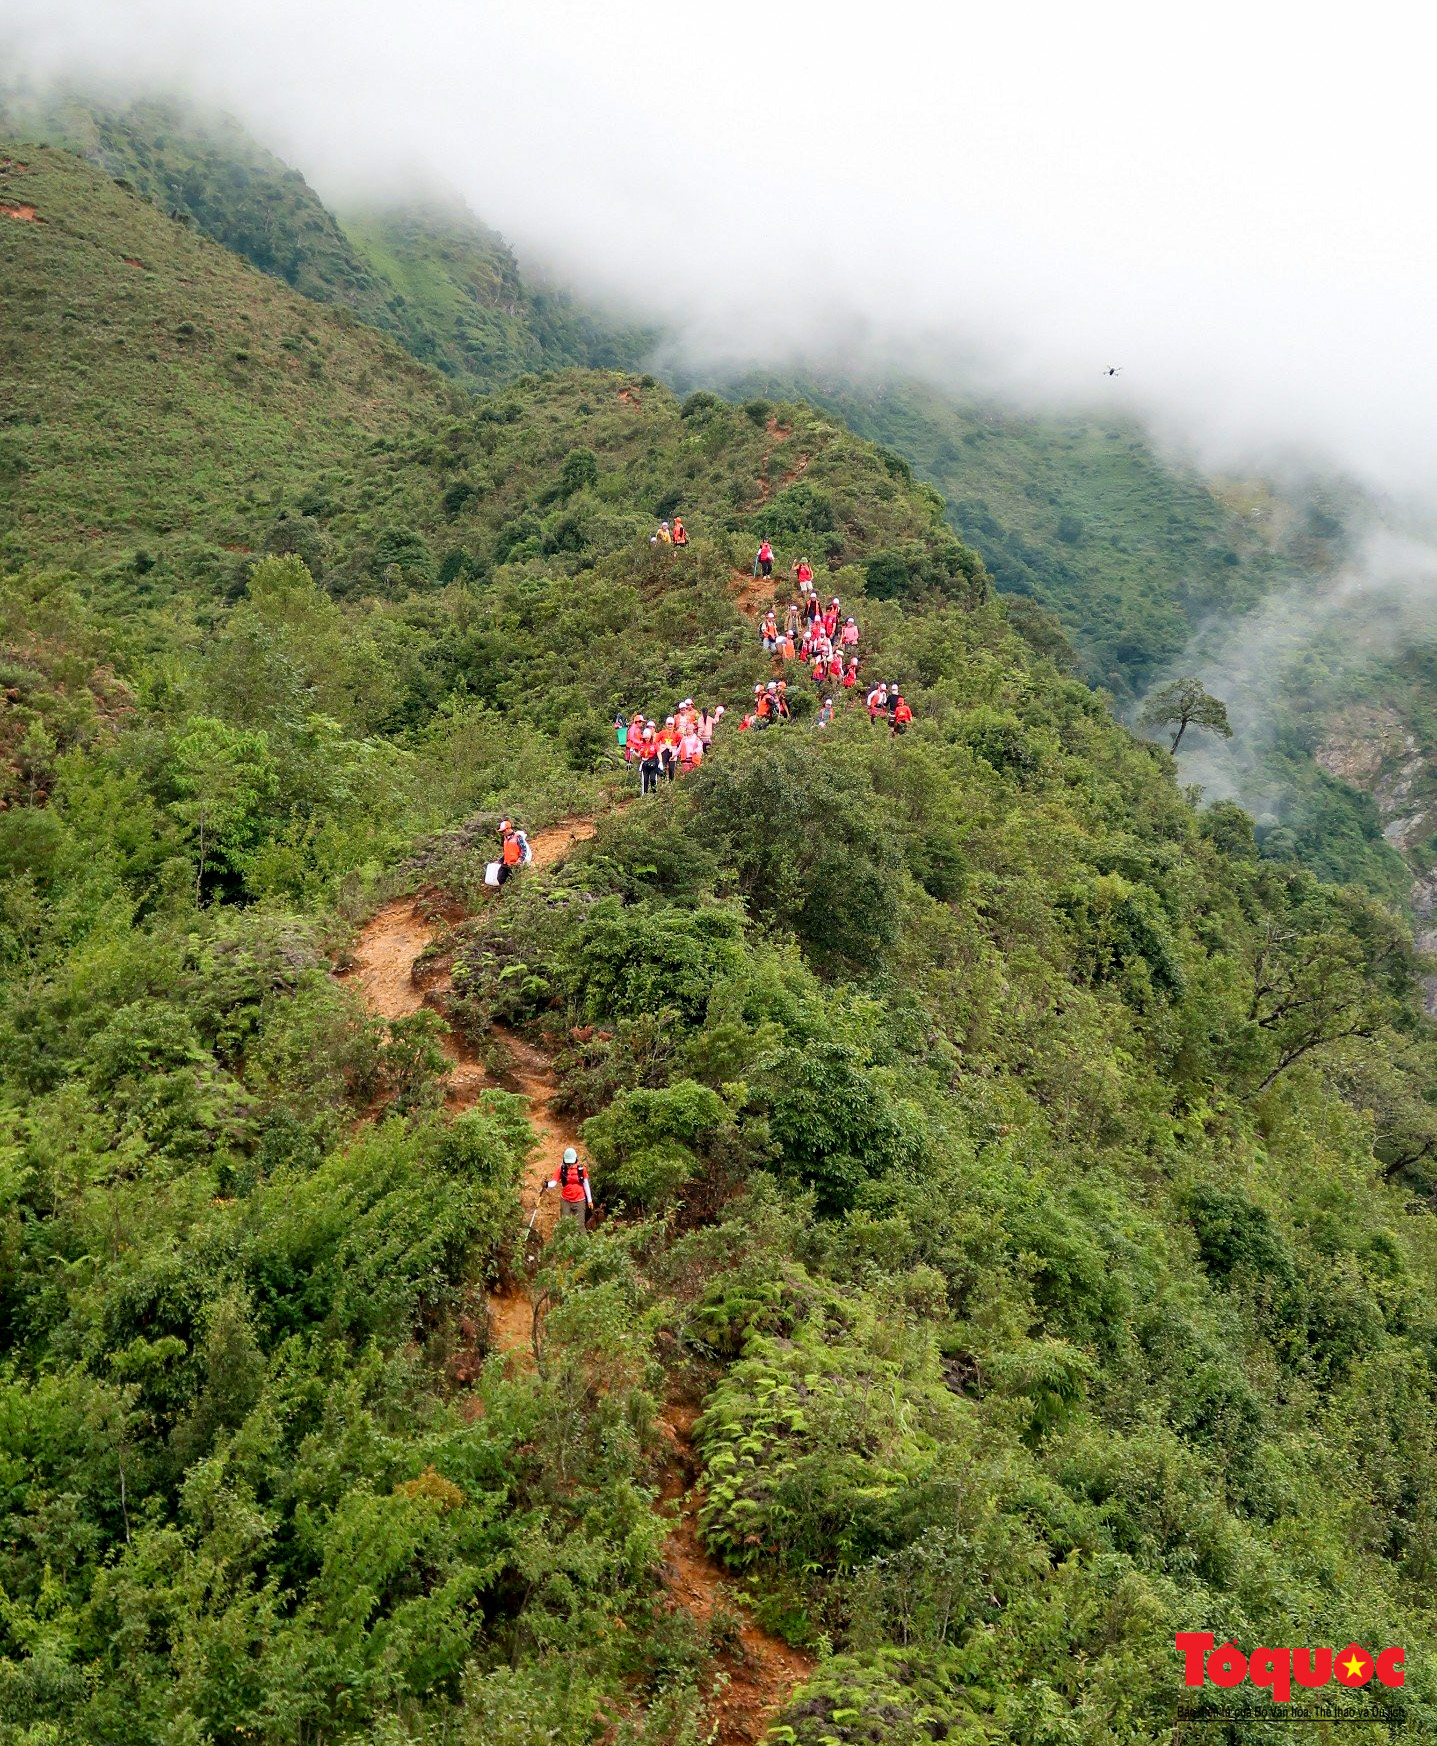 Hơn 100 nhà báo, phóng viên chinh phục đỉnh Tà Chì Nhù ở độ cao 2927m - Ảnh 6.